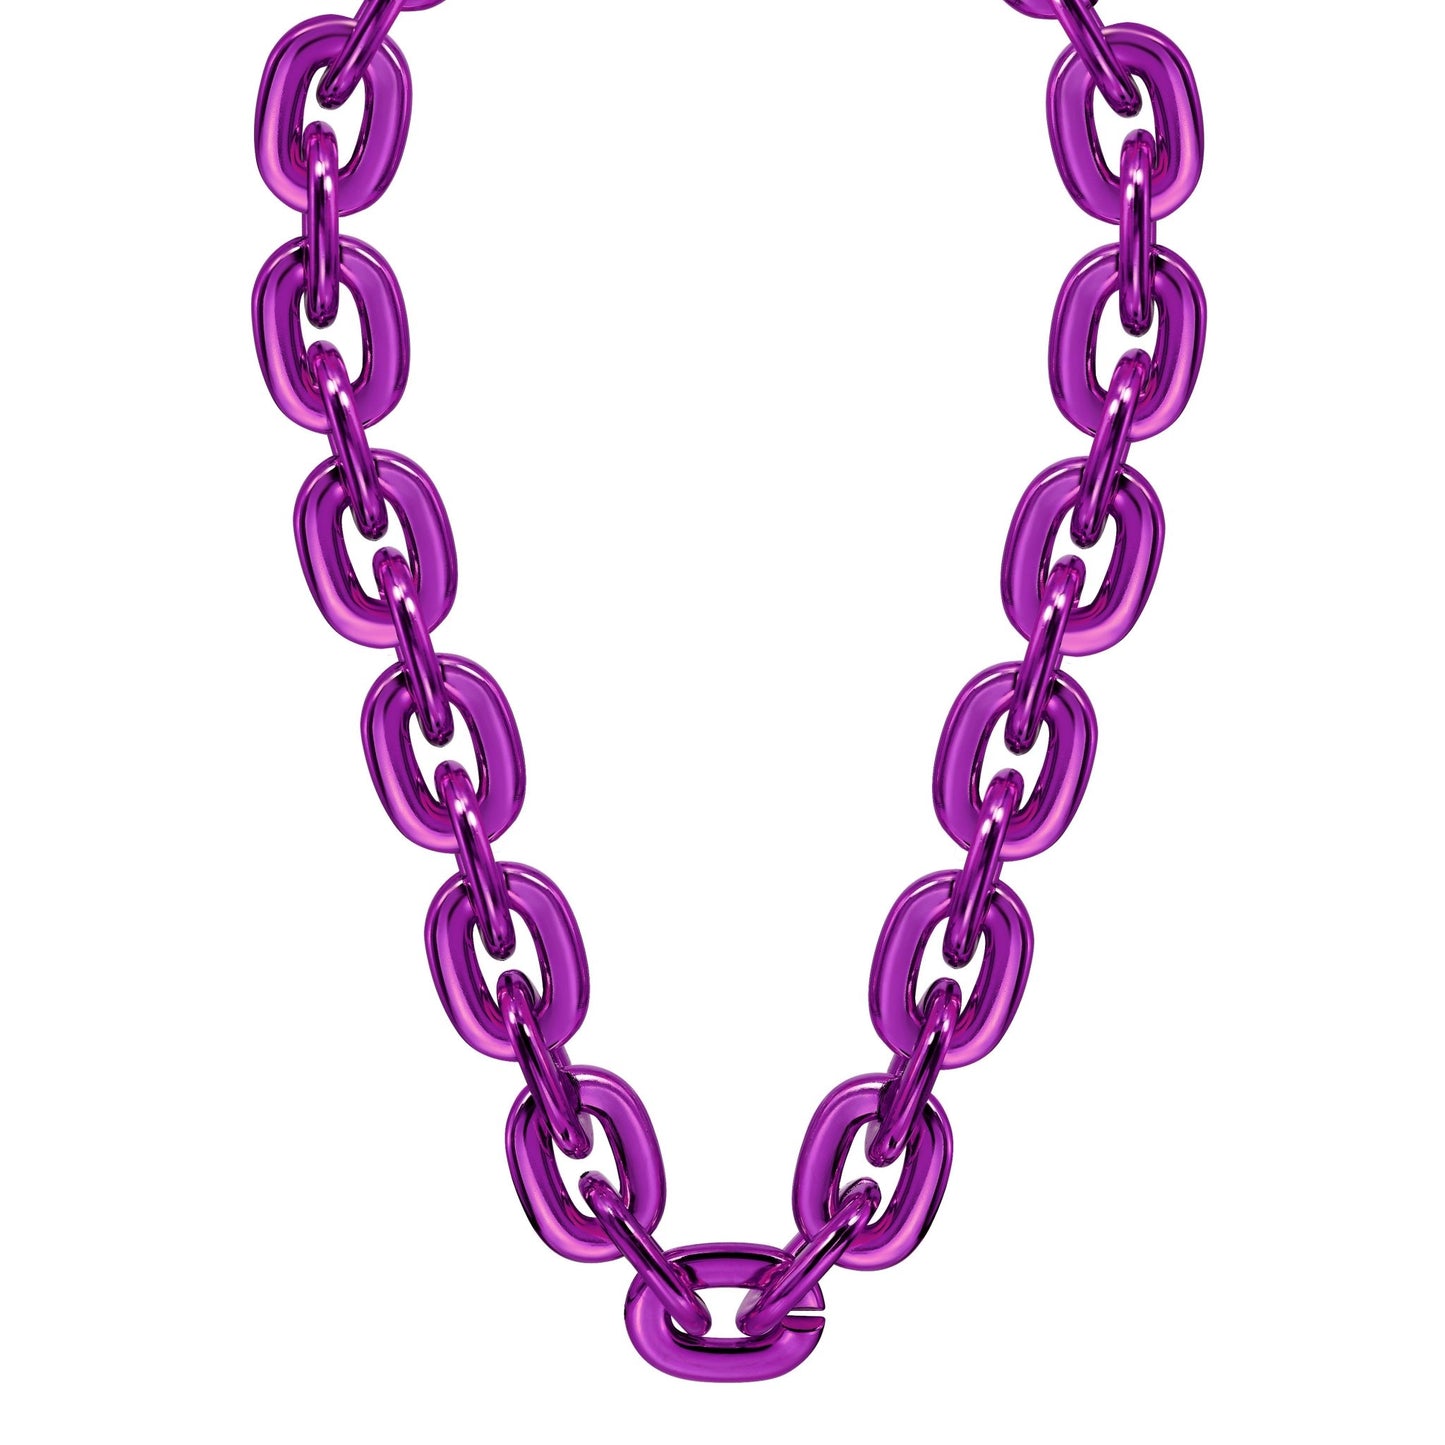 Jumbo Fan Chain Necklace - Gamedays Gear - Purple